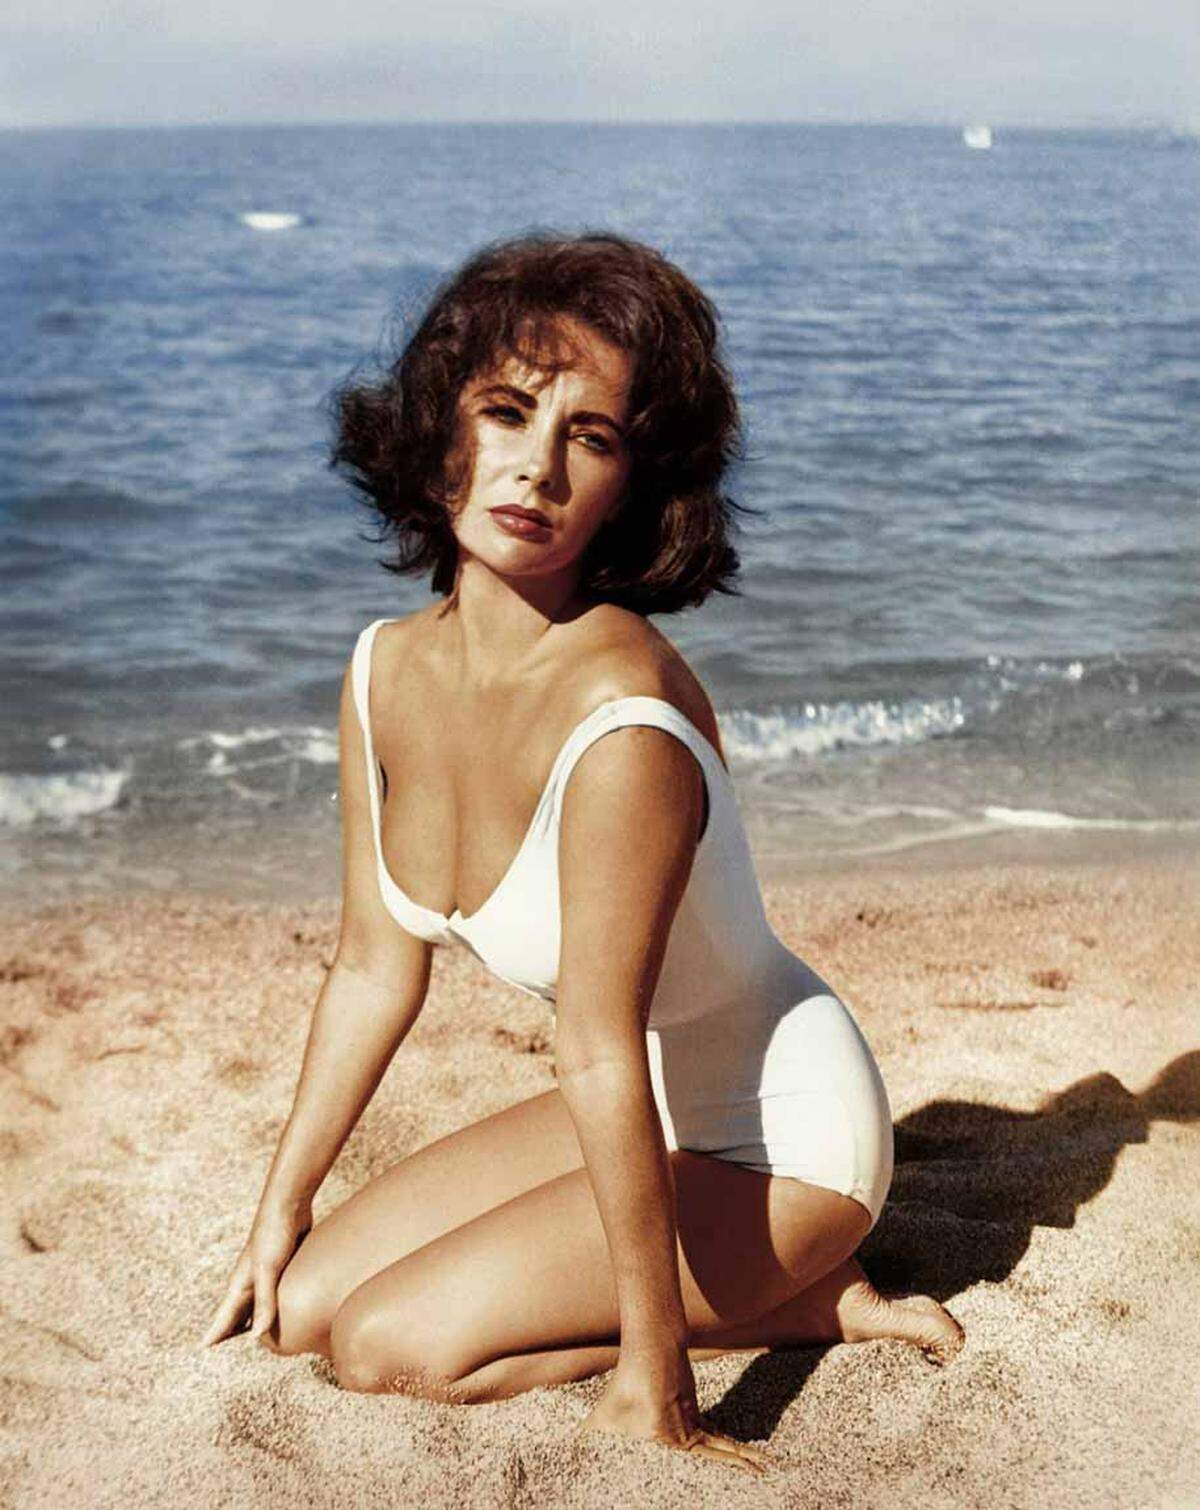 Wie man sich in Bademode glamourös in Szene setzte, wussten wohl die Hollywood-Diven in den 50er- und 60er-Jahren am besten.  1959 räkelte sich Elizabeth Taylor für den Film "Suddenly, last summer" im Sand.